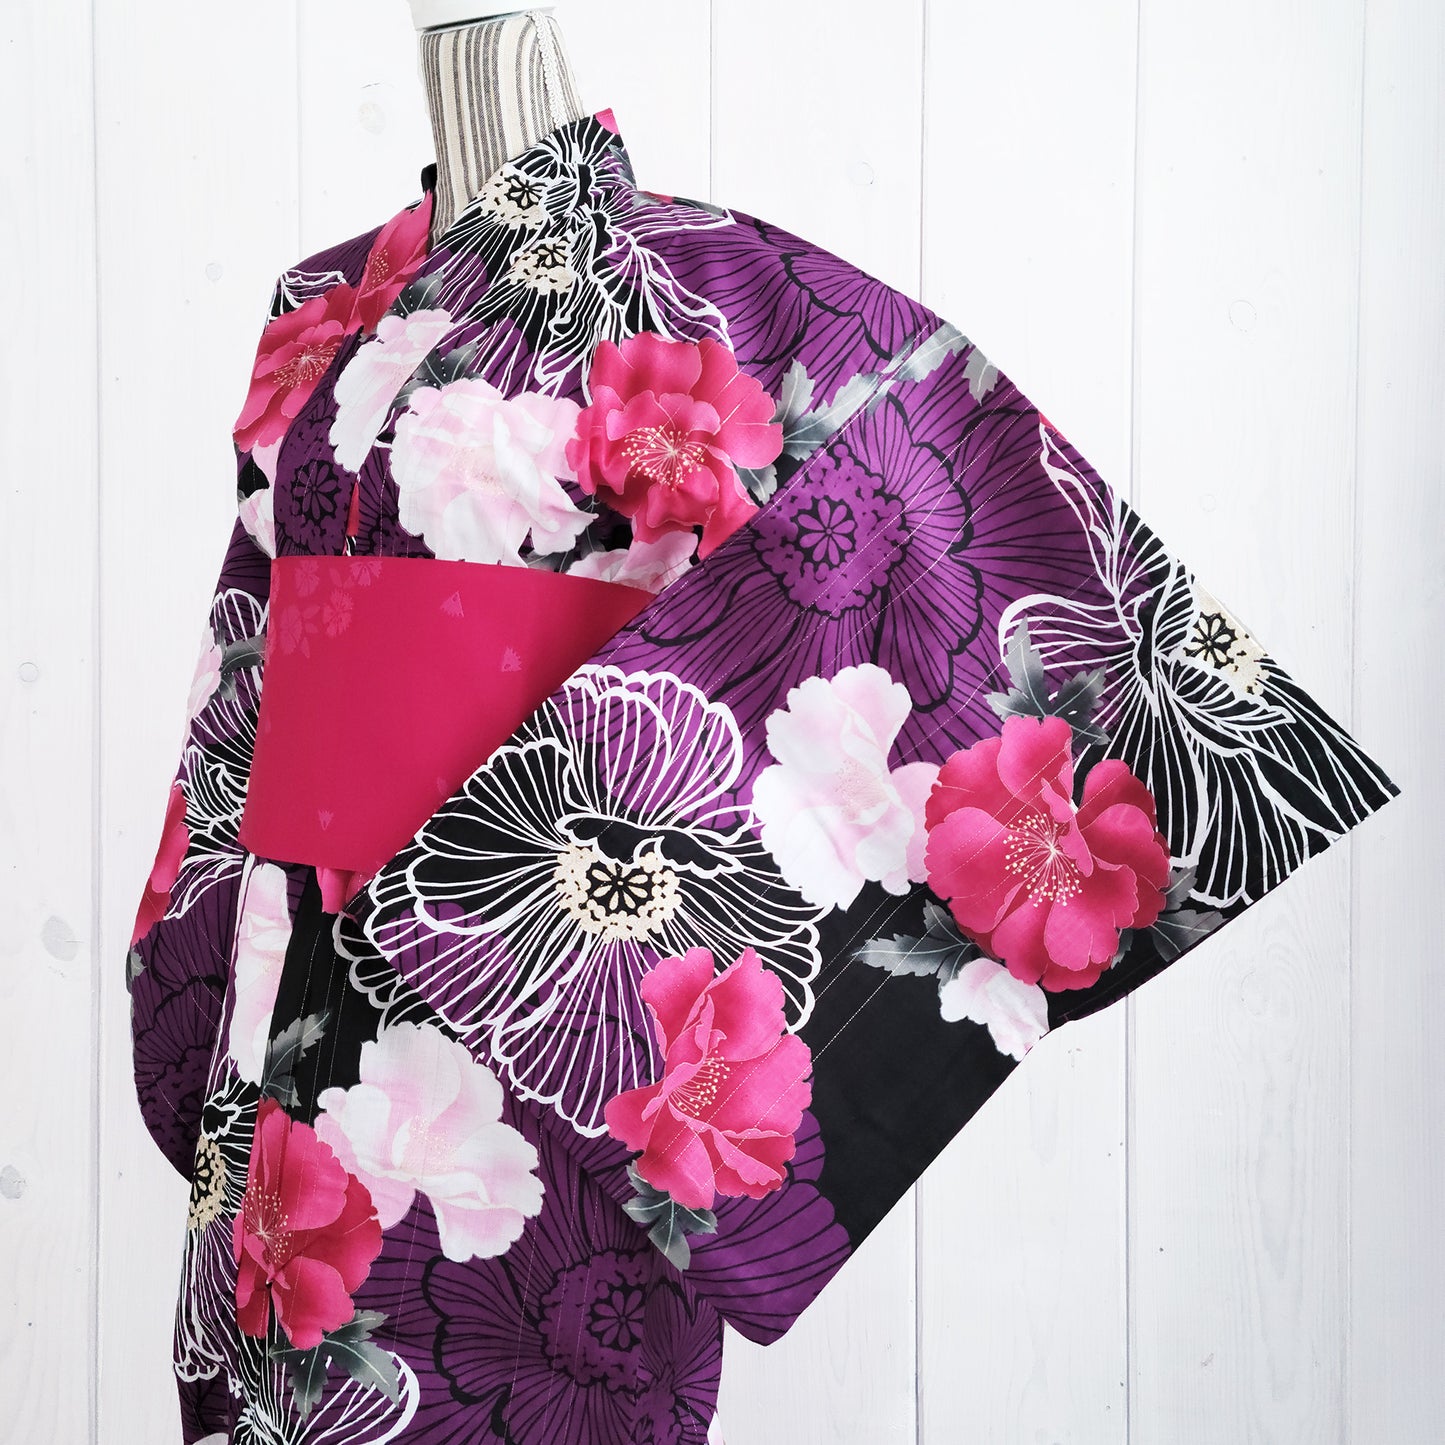 Women's Traditional Japanese Yukata Kimono - Chrysanthemum in Pink and Purple